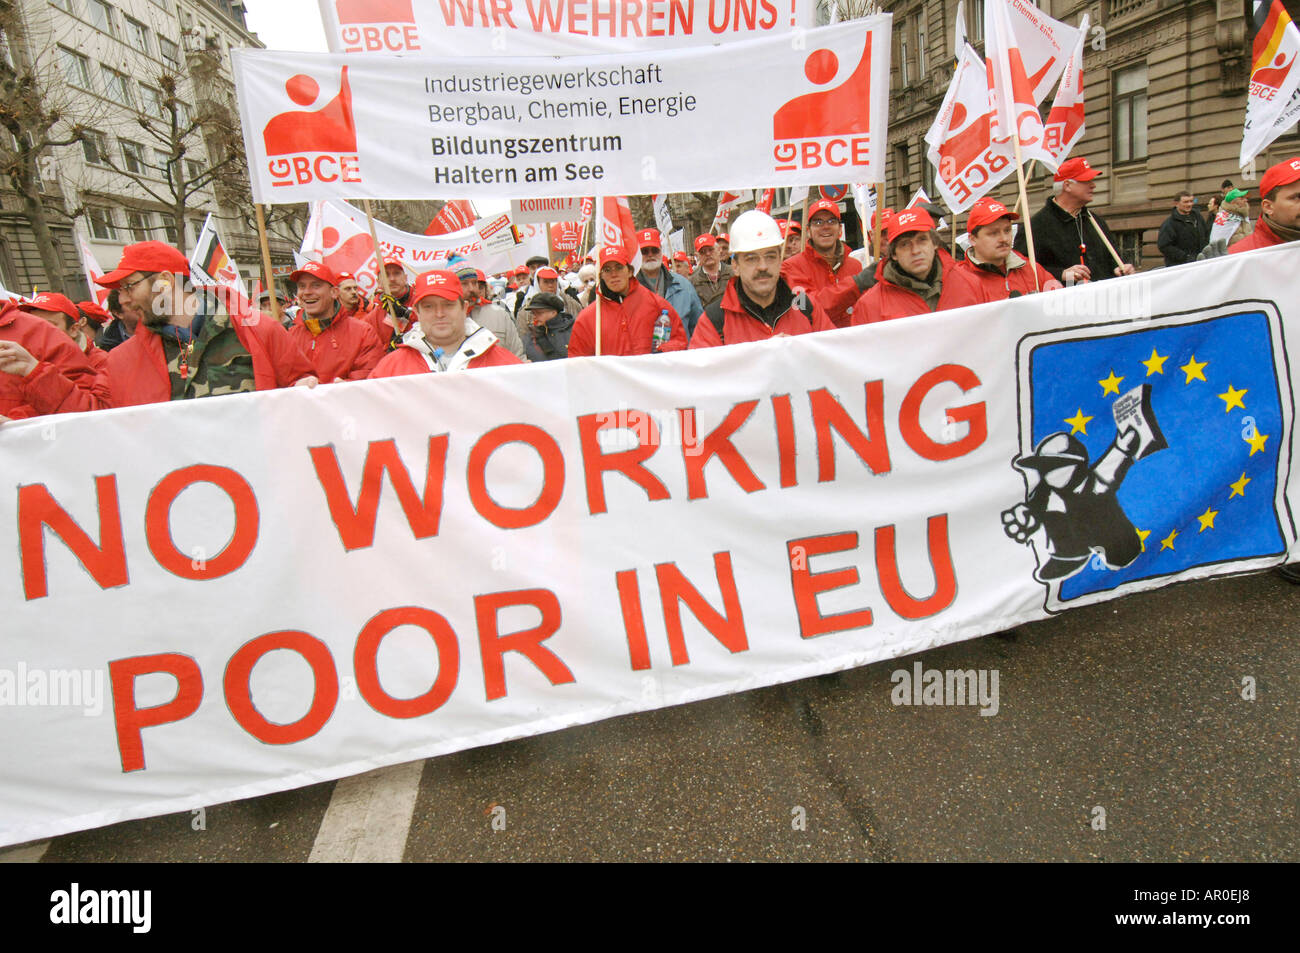 Manifestation contre le service direktive en Europe - pas de travailleurs pauvres dans l'Union européenne, Strasbourg, Alsace, France Banque D'Images